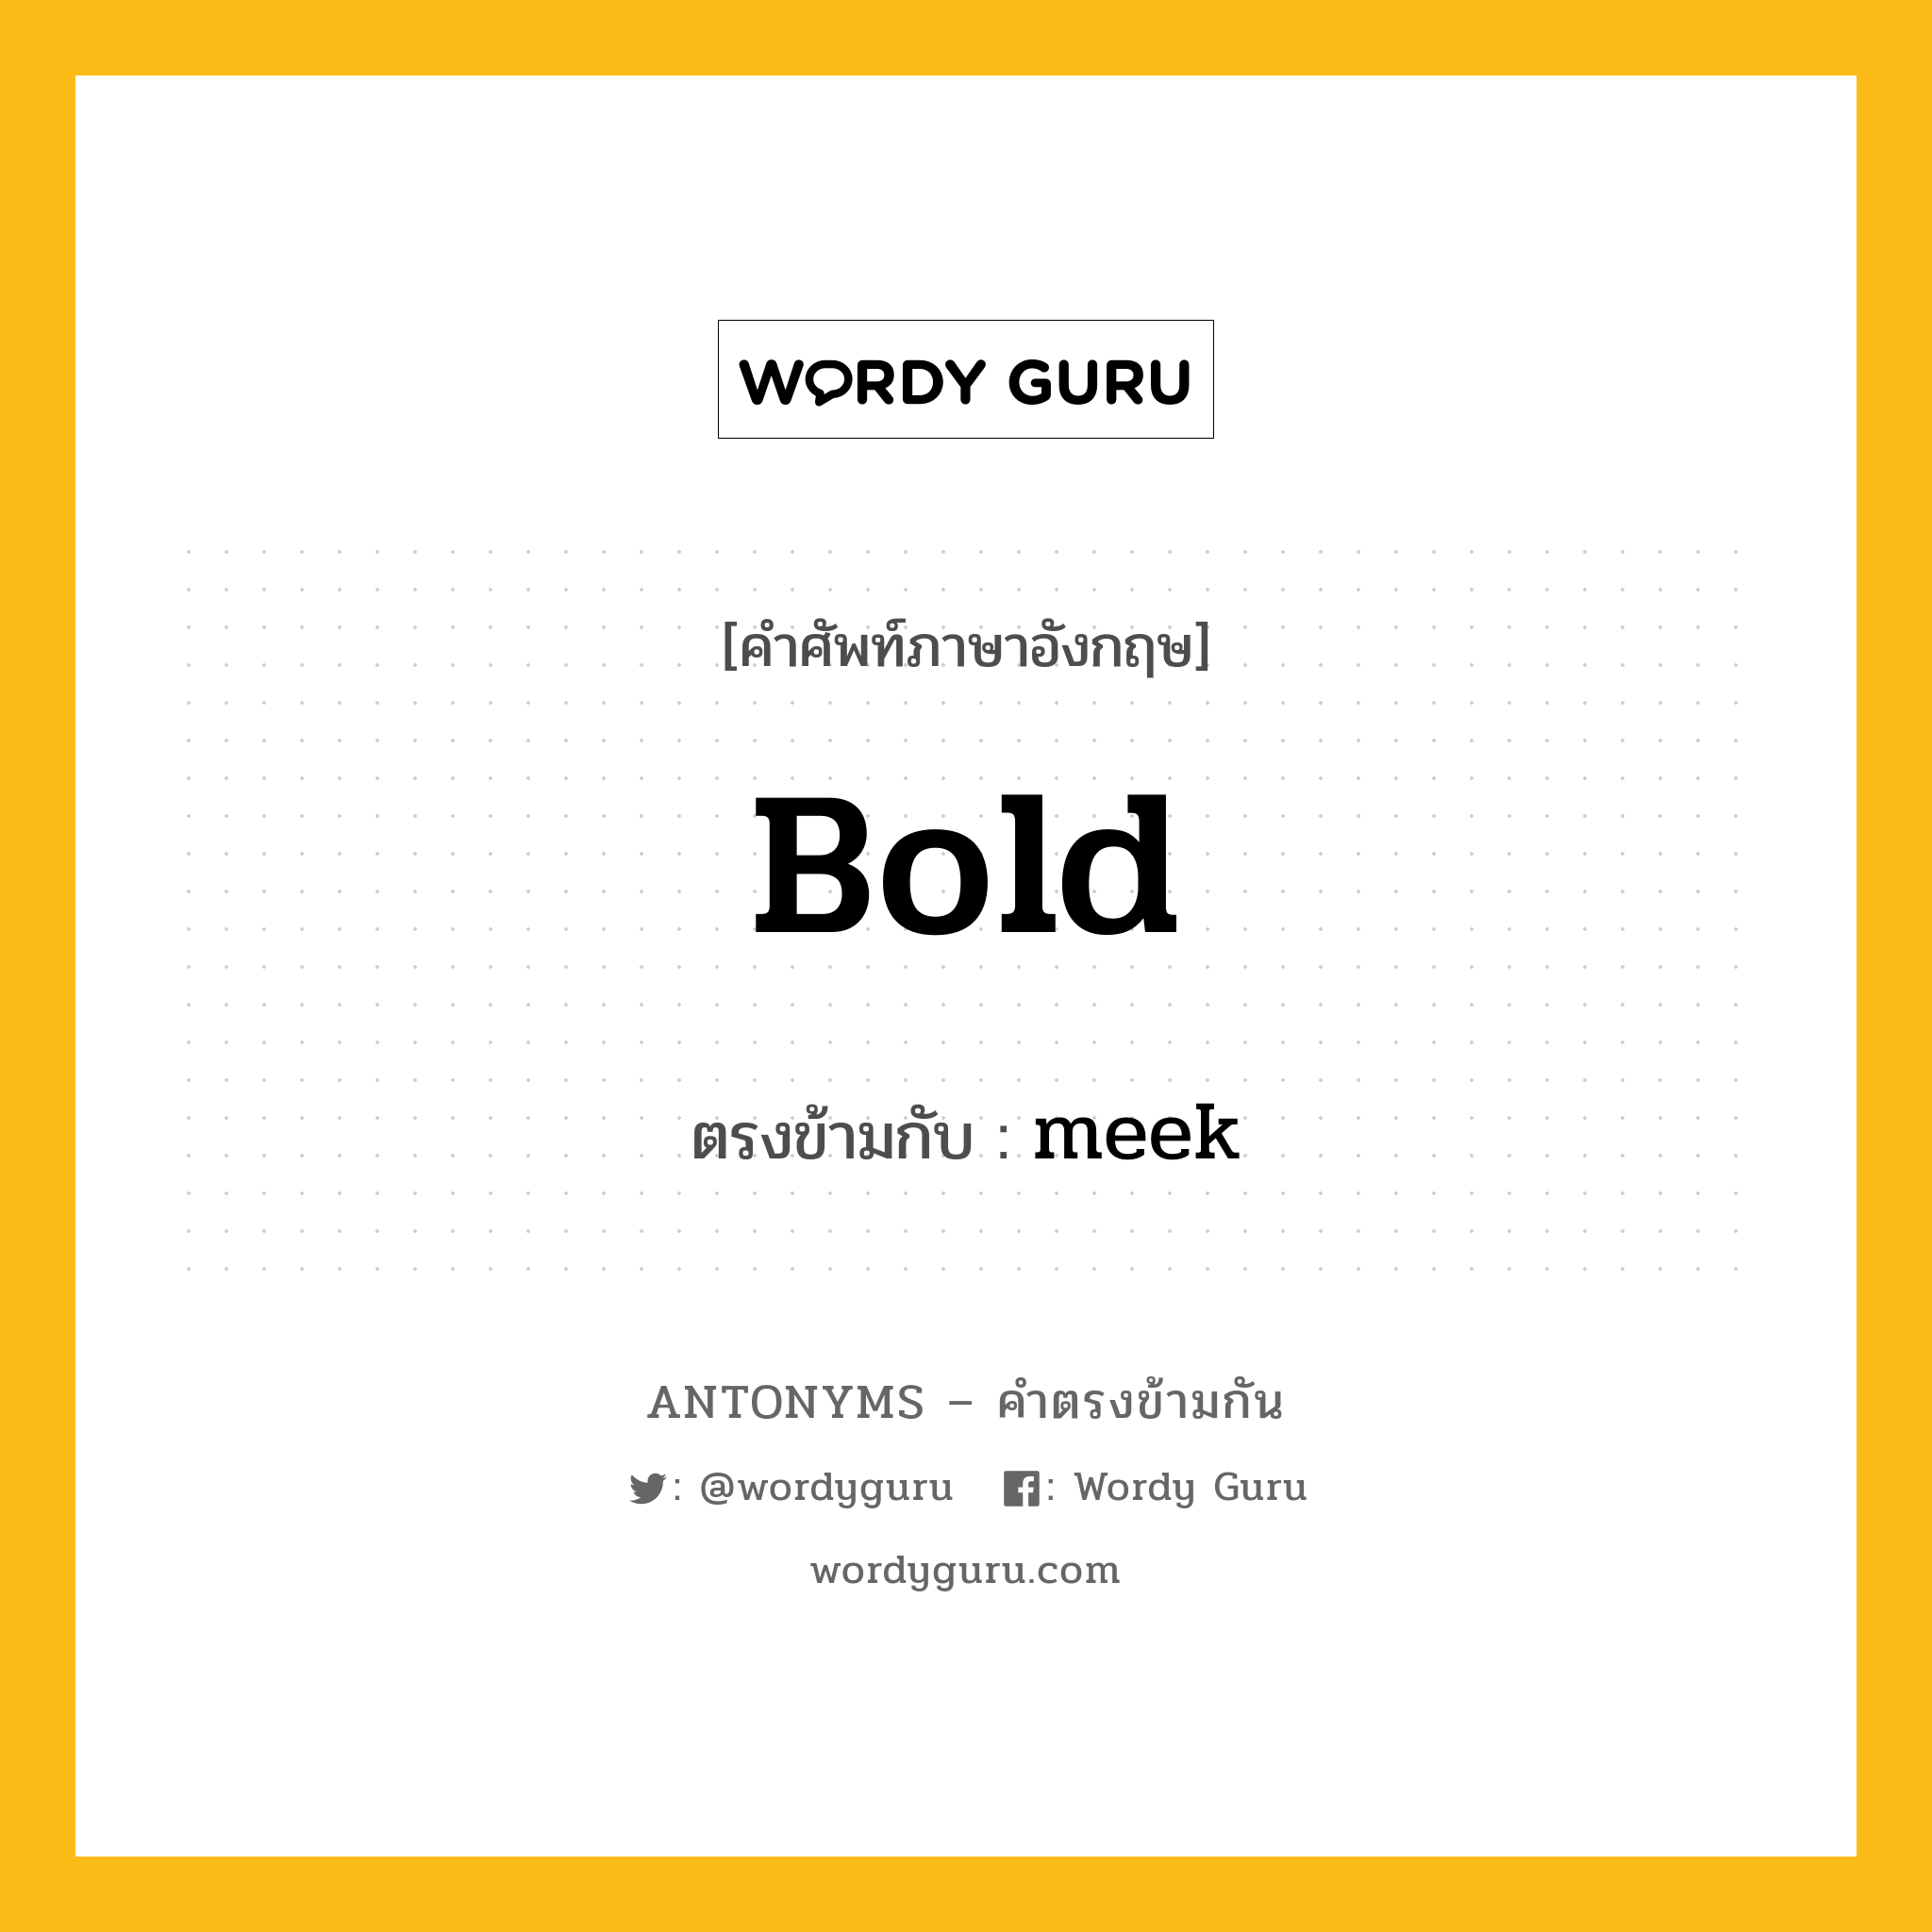 bold เป็นคำตรงข้ามกับคำไหนบ้าง?, คำศัพท์ภาษาอังกฤษ bold ตรงข้ามกับ meek หมวด meek